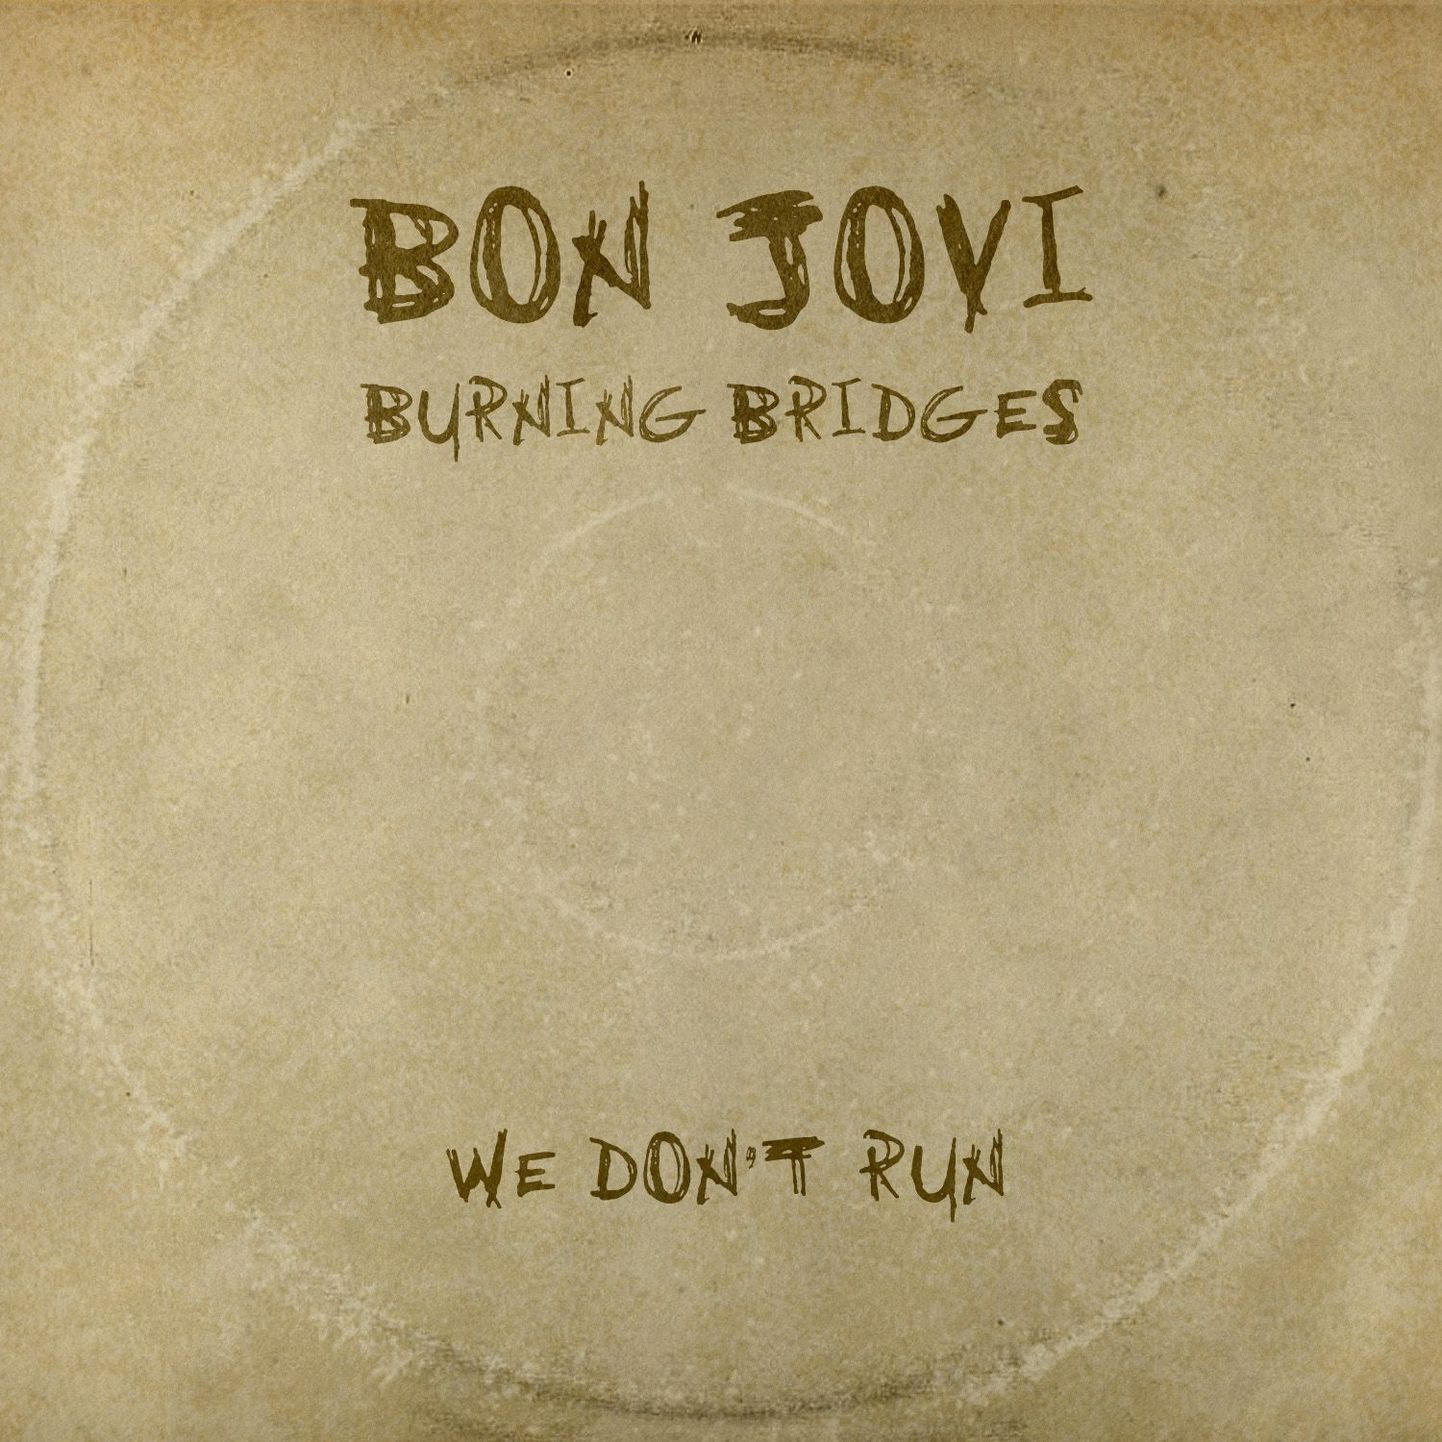 Bonjovi- Burning Bridges